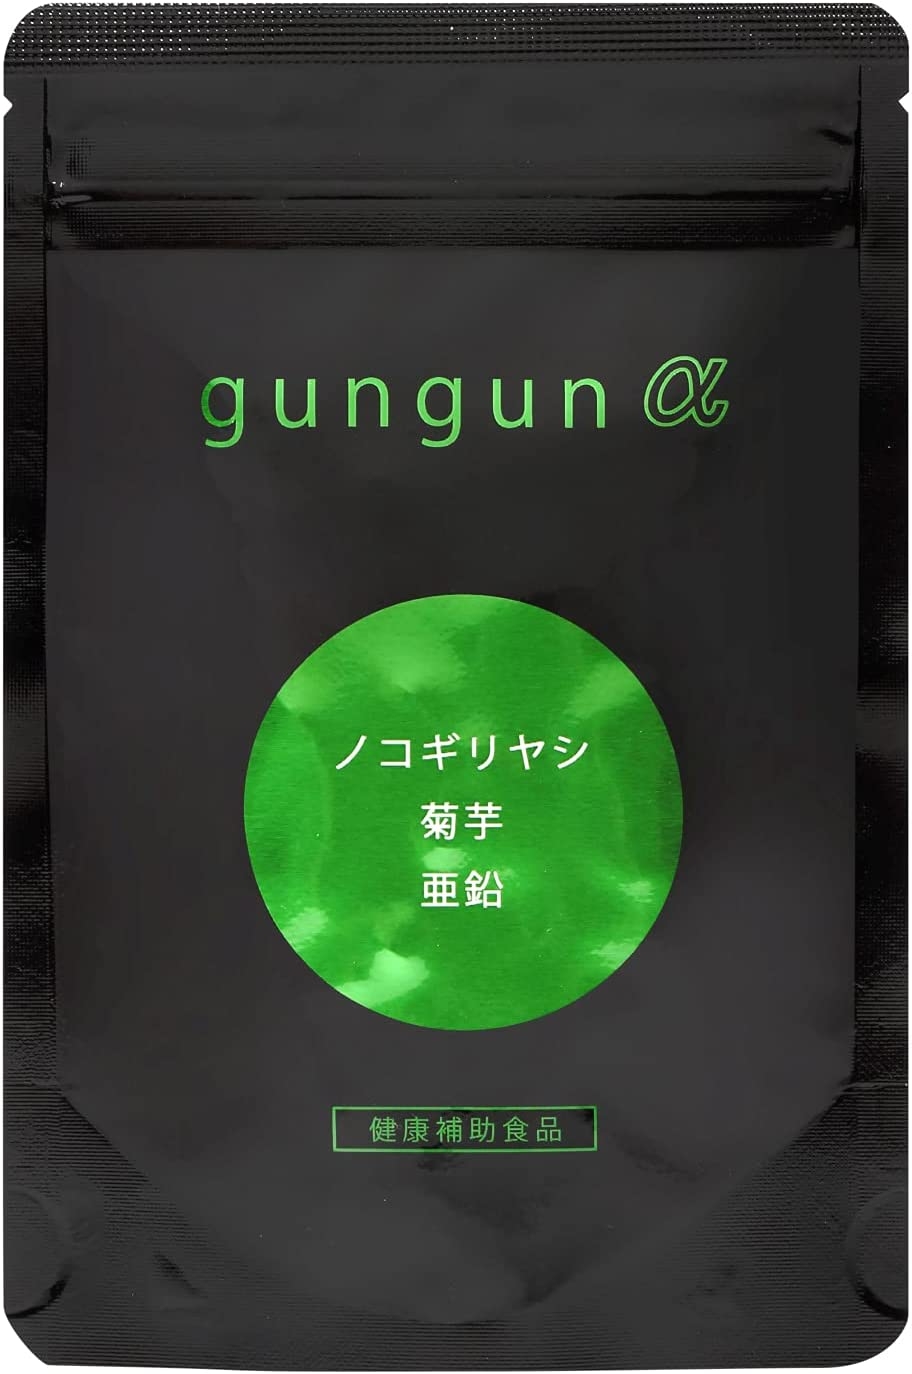 美彩(BISAI) gungun α